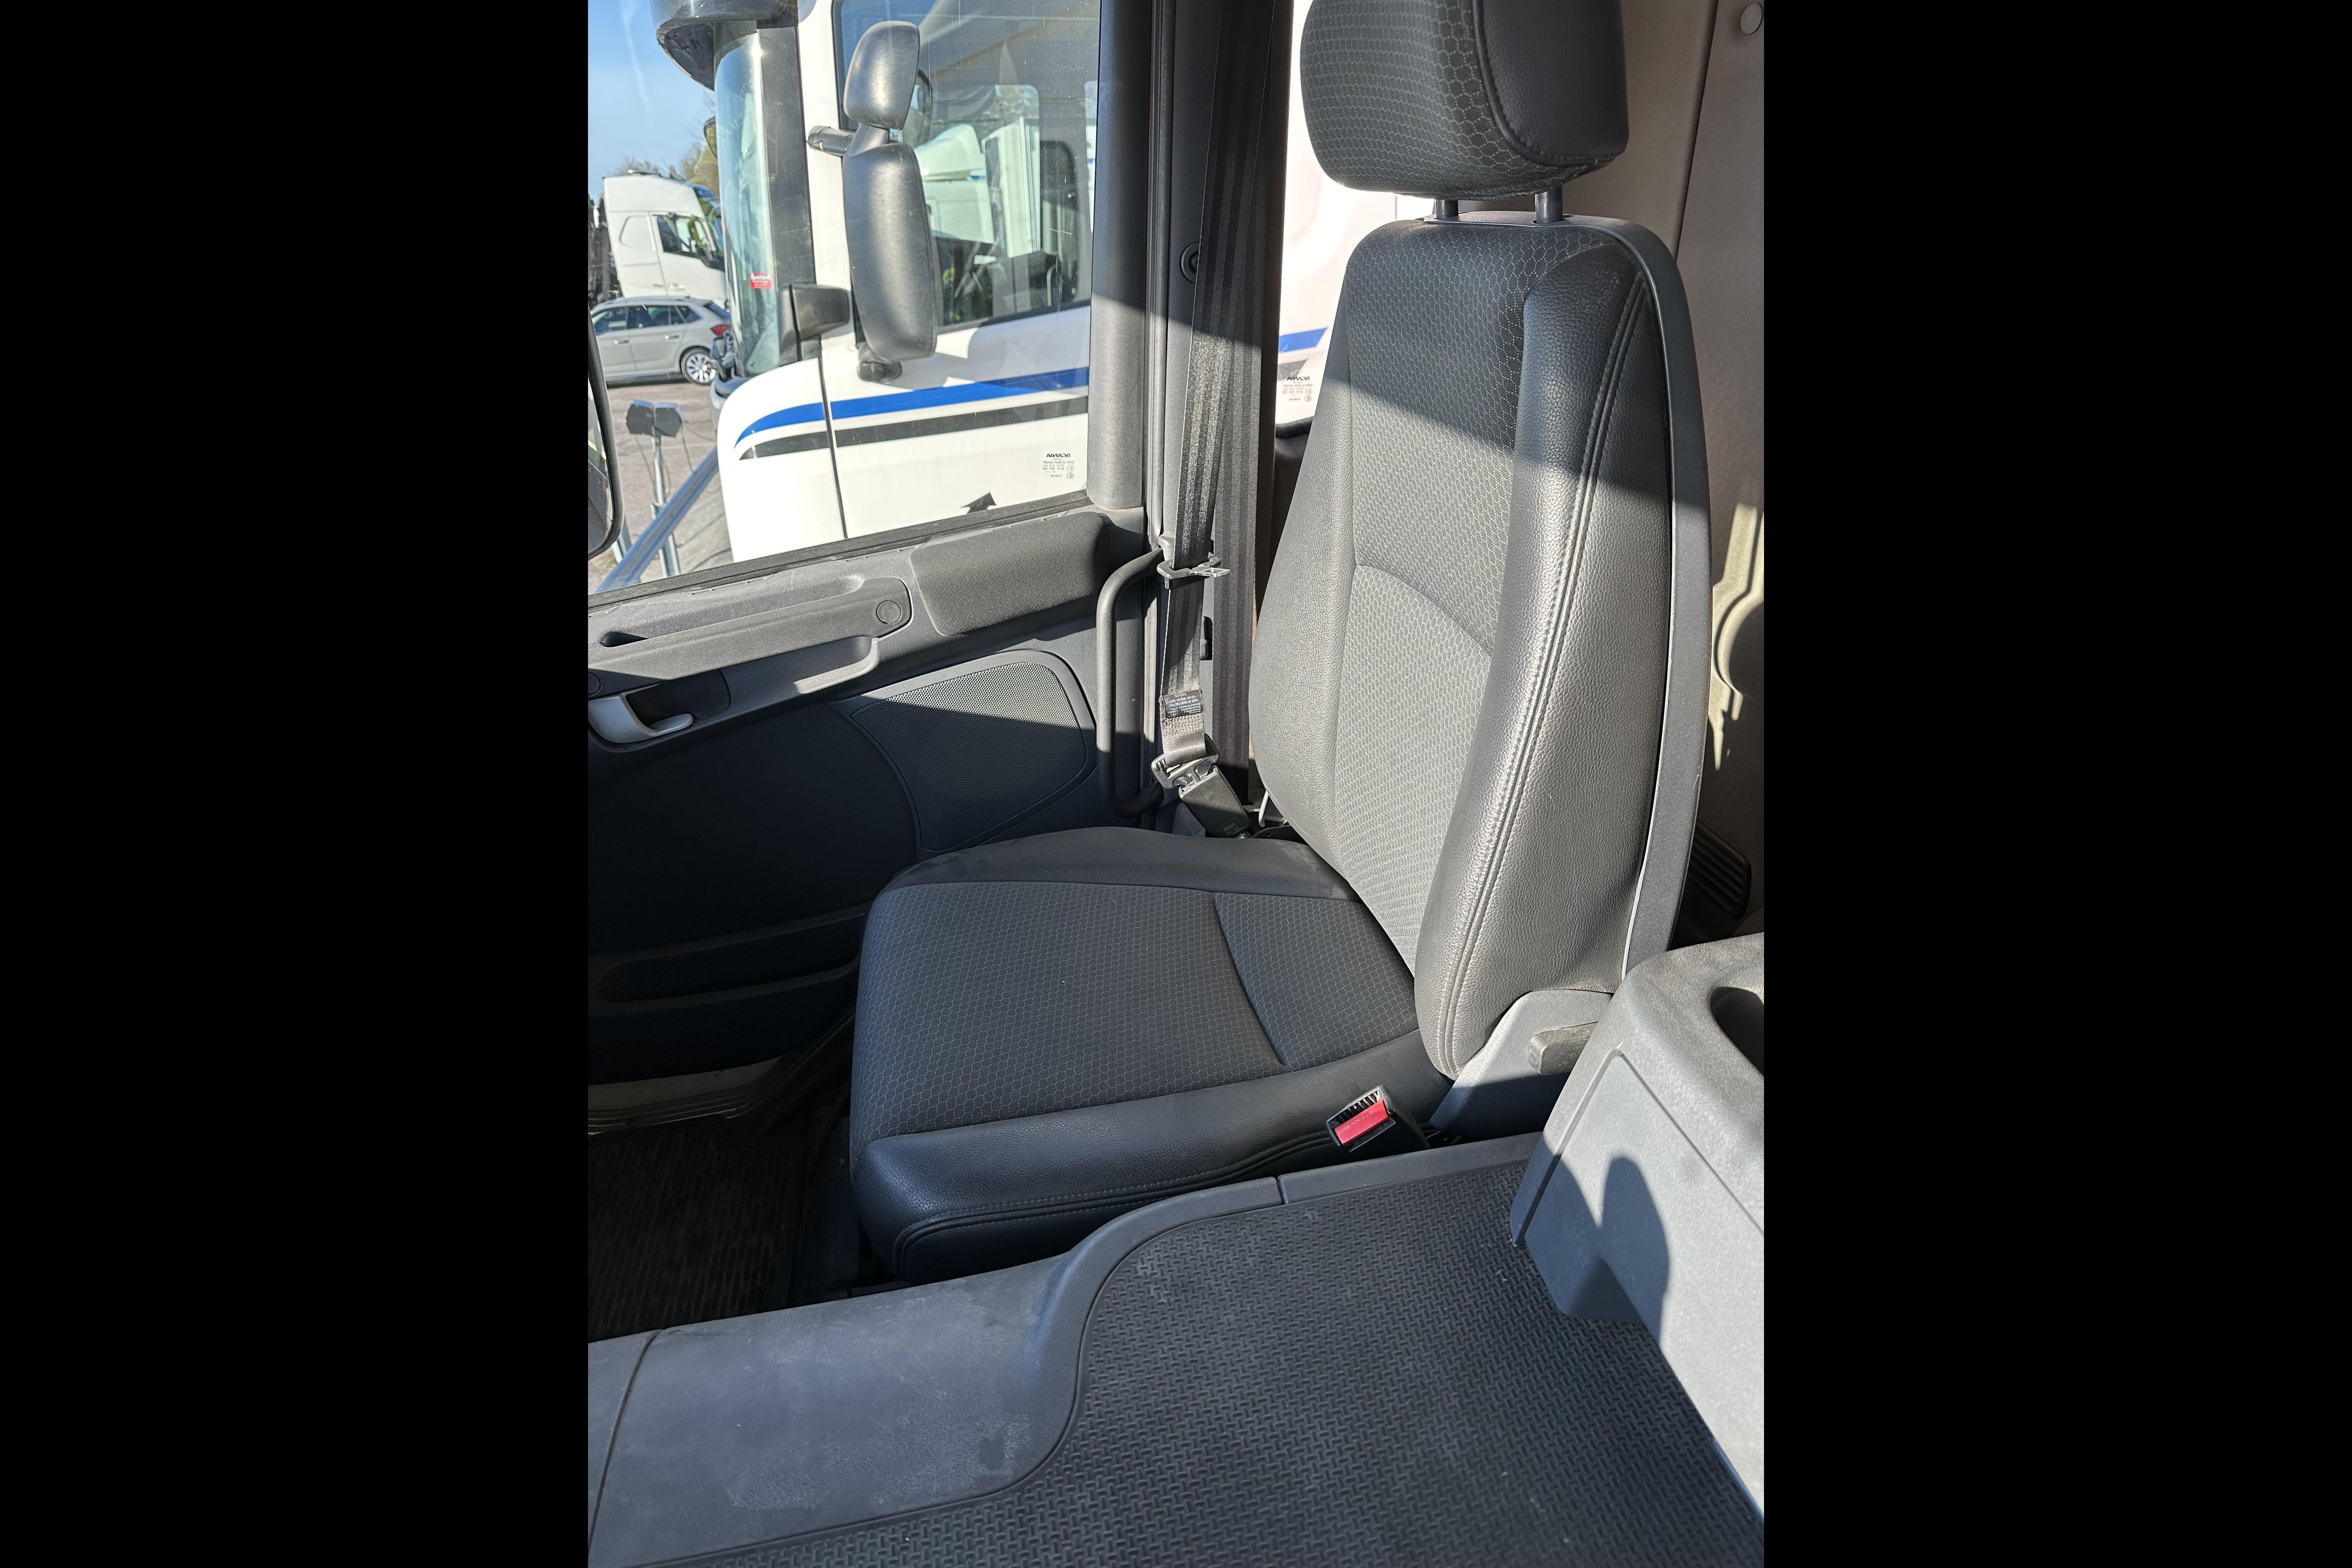 Scania P360 - 363 800 km - Automat - vit - 2015